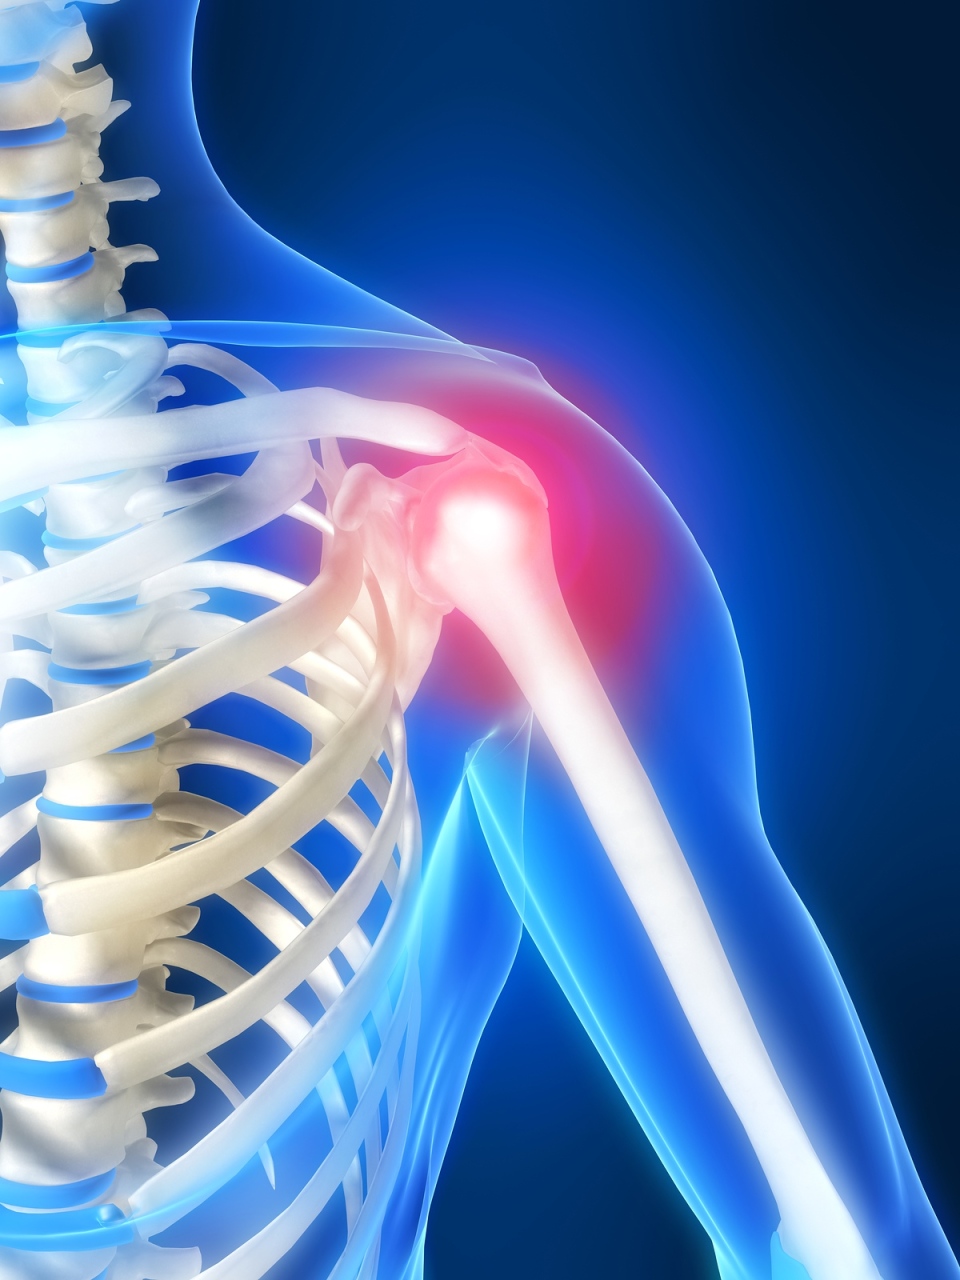 skausmas nugaros apacioje pries menesines gydymas baltymų artrozės